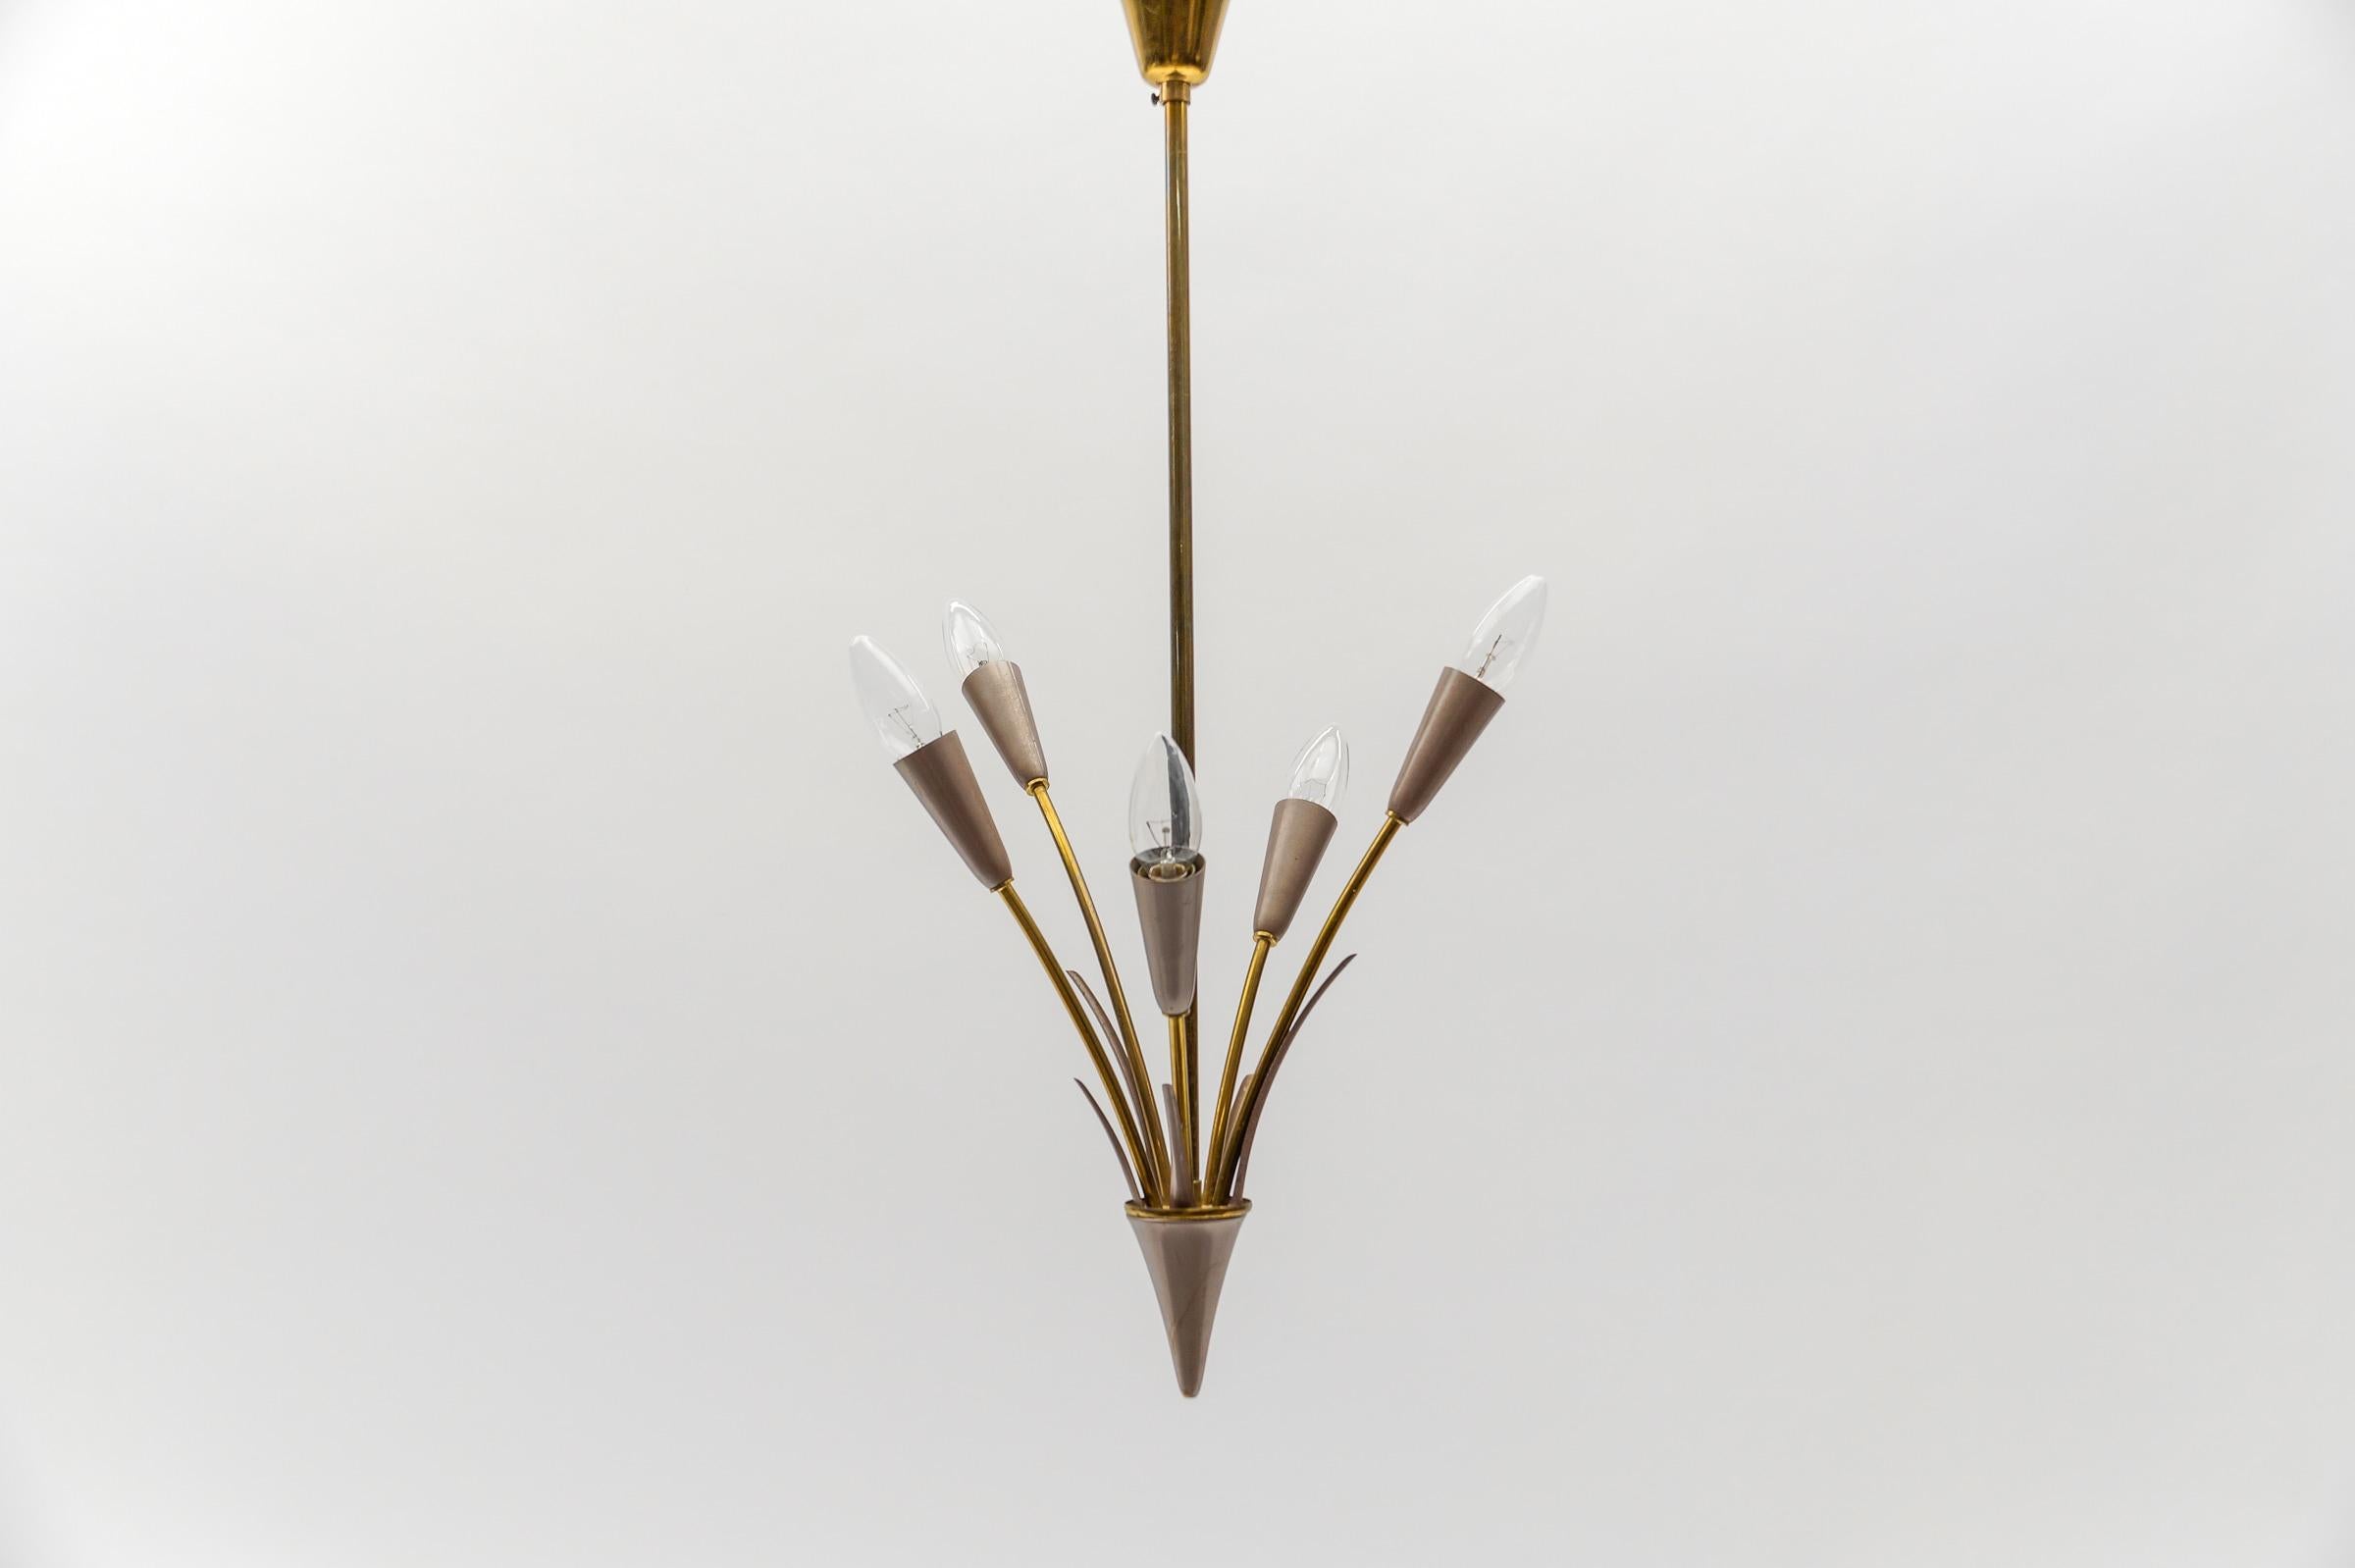 5-armige Sputnik-Lampen aus Messing aus der Jahrhundertmitte. Nach dem Vorbild von Arteluce.

Seltene und elegante Sputnik-Lampen aus der Mitte des Jahrhunderts, 1950er Jahre, Italien. Ausgeführt in lackiertem Metall und Messing.

Die Lampe ist mit